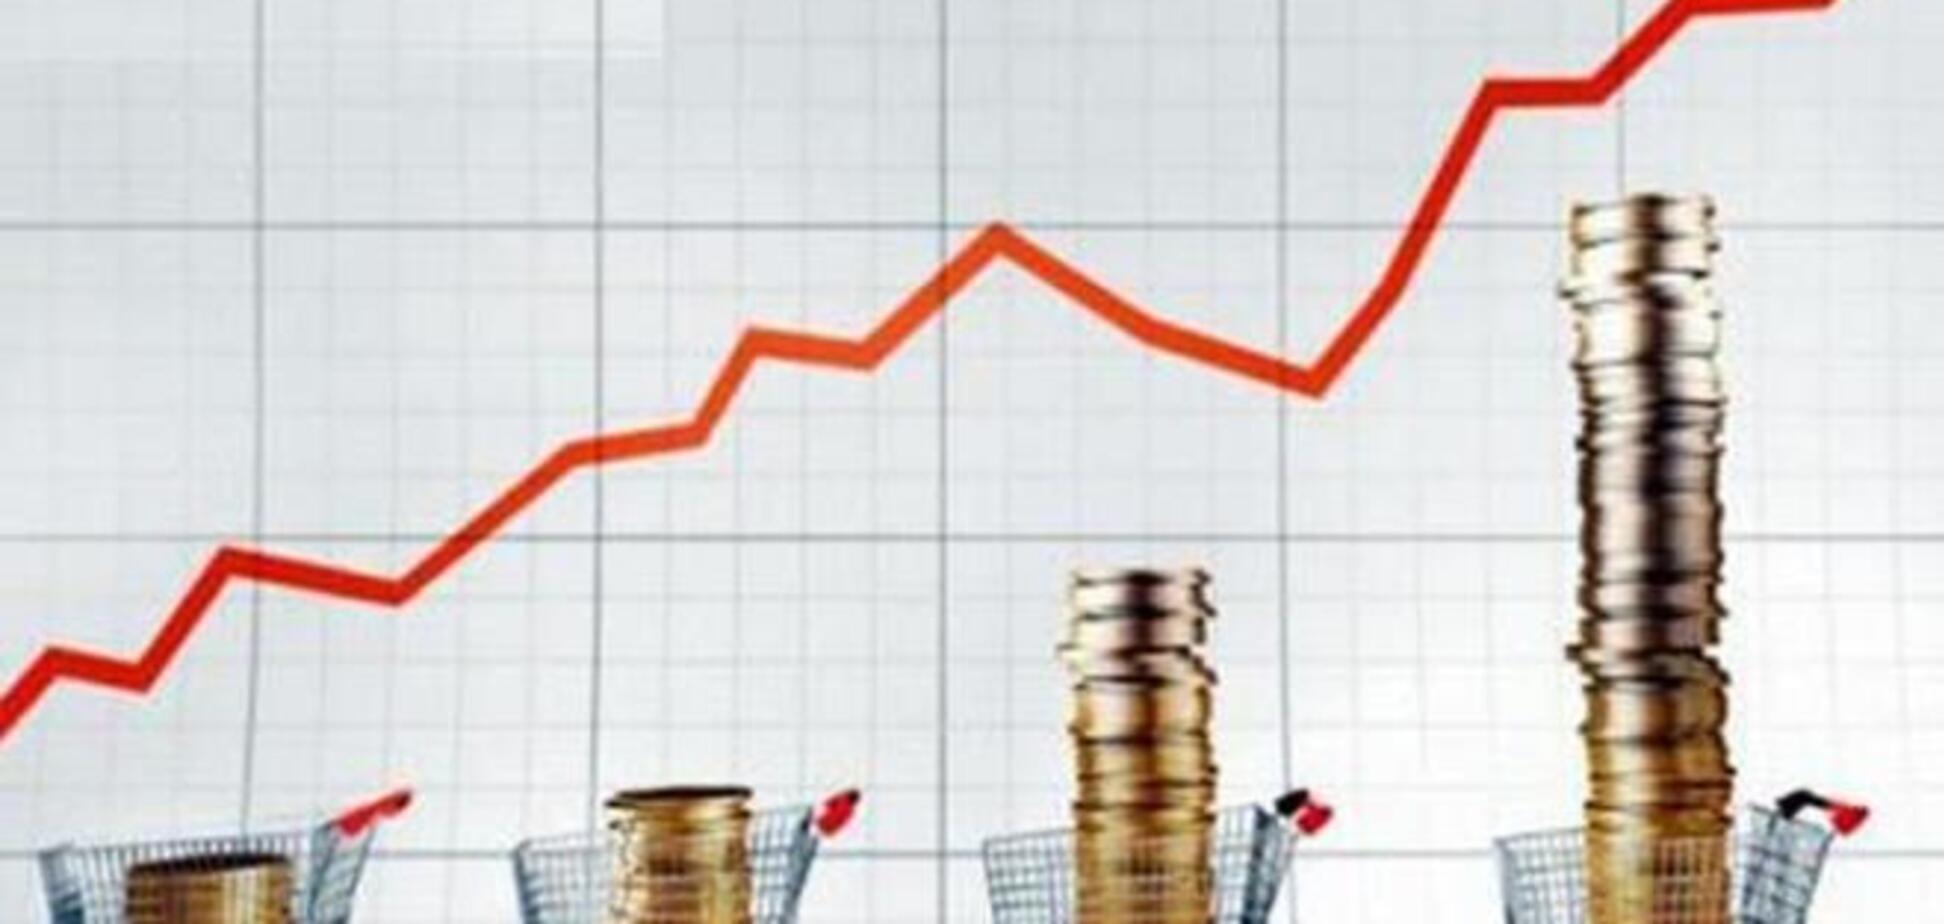 Инфляция в Украине за 11 месяцев 2014 года выросла до 21,1%